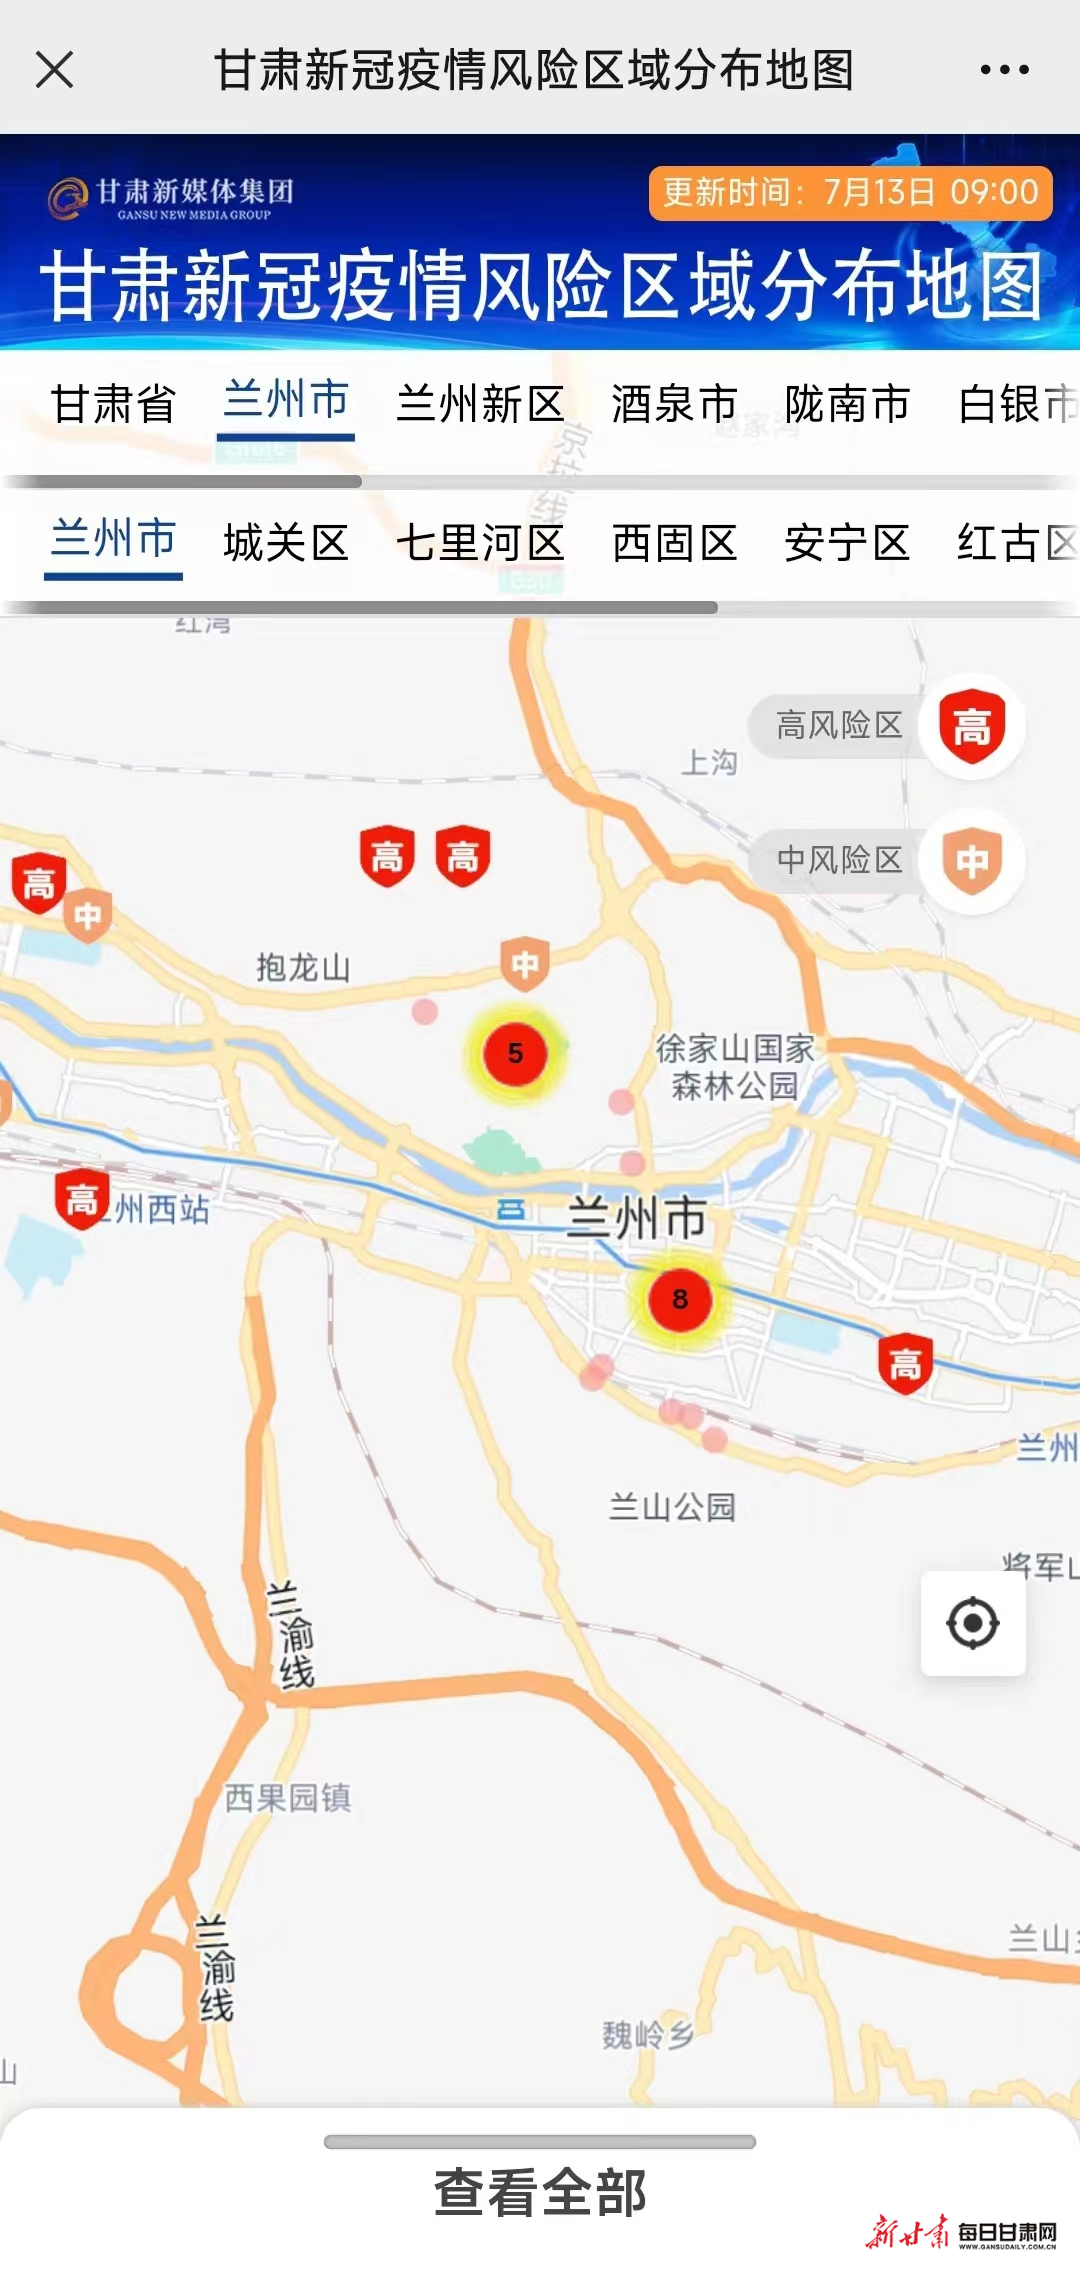 一键速查——甘肃新媒体集团为您开启新冠疫情风险区域分布地图